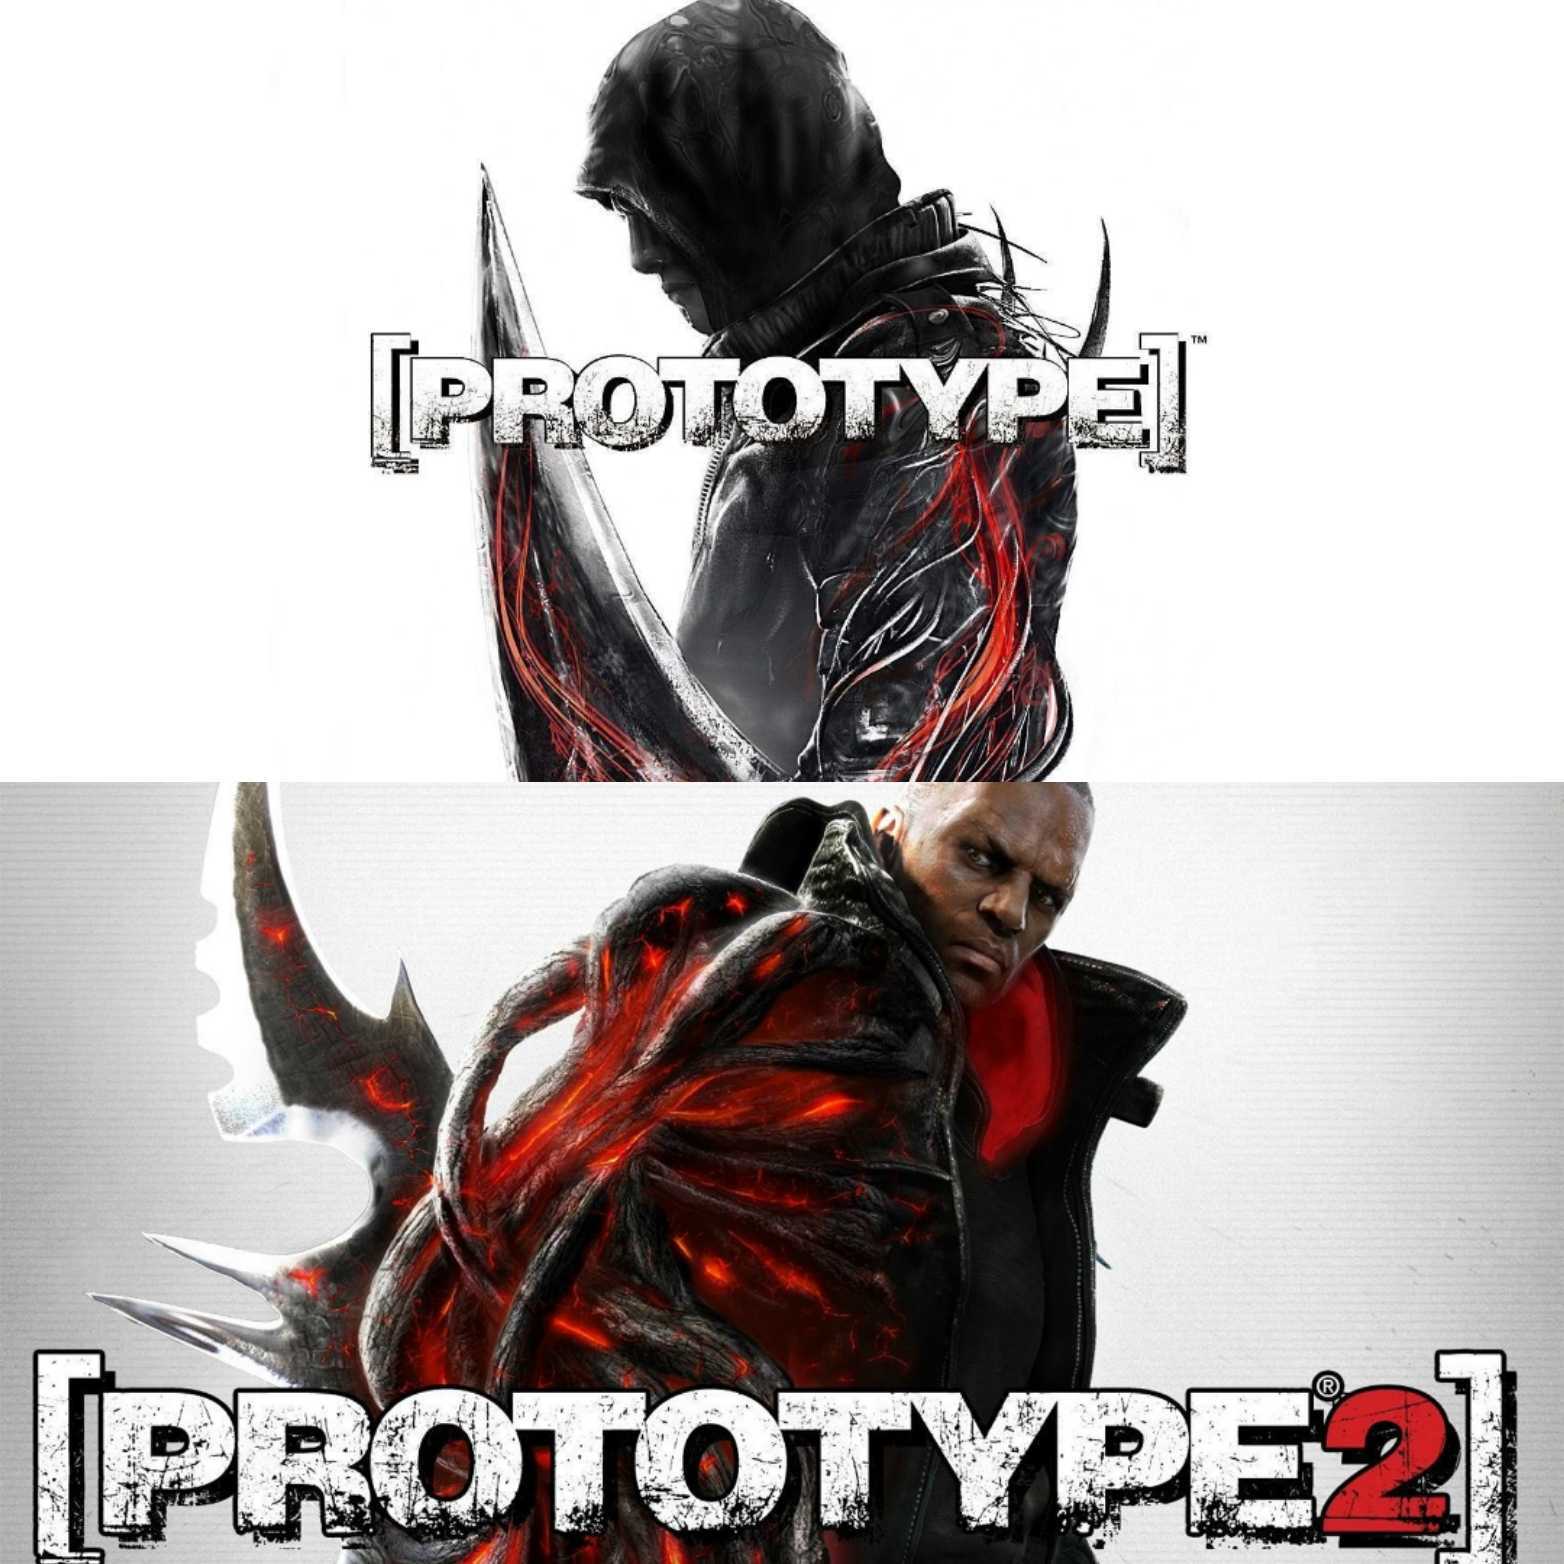 The Prototype games